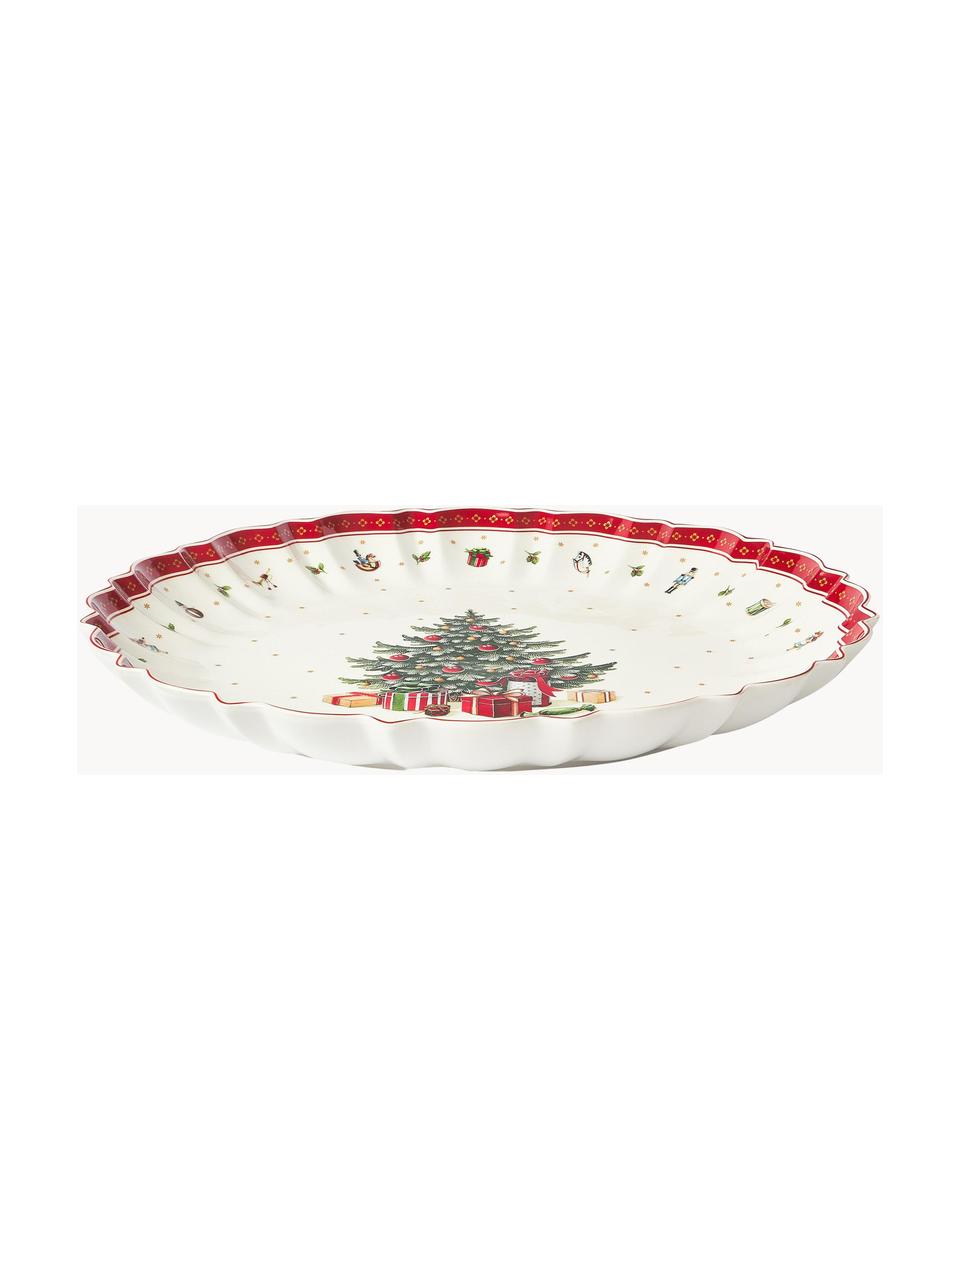 Velká porcelánová servírovací mísa Toy's Delight, Prémiový porcelán, Bílá, zelená, červená, Ø 44 cm